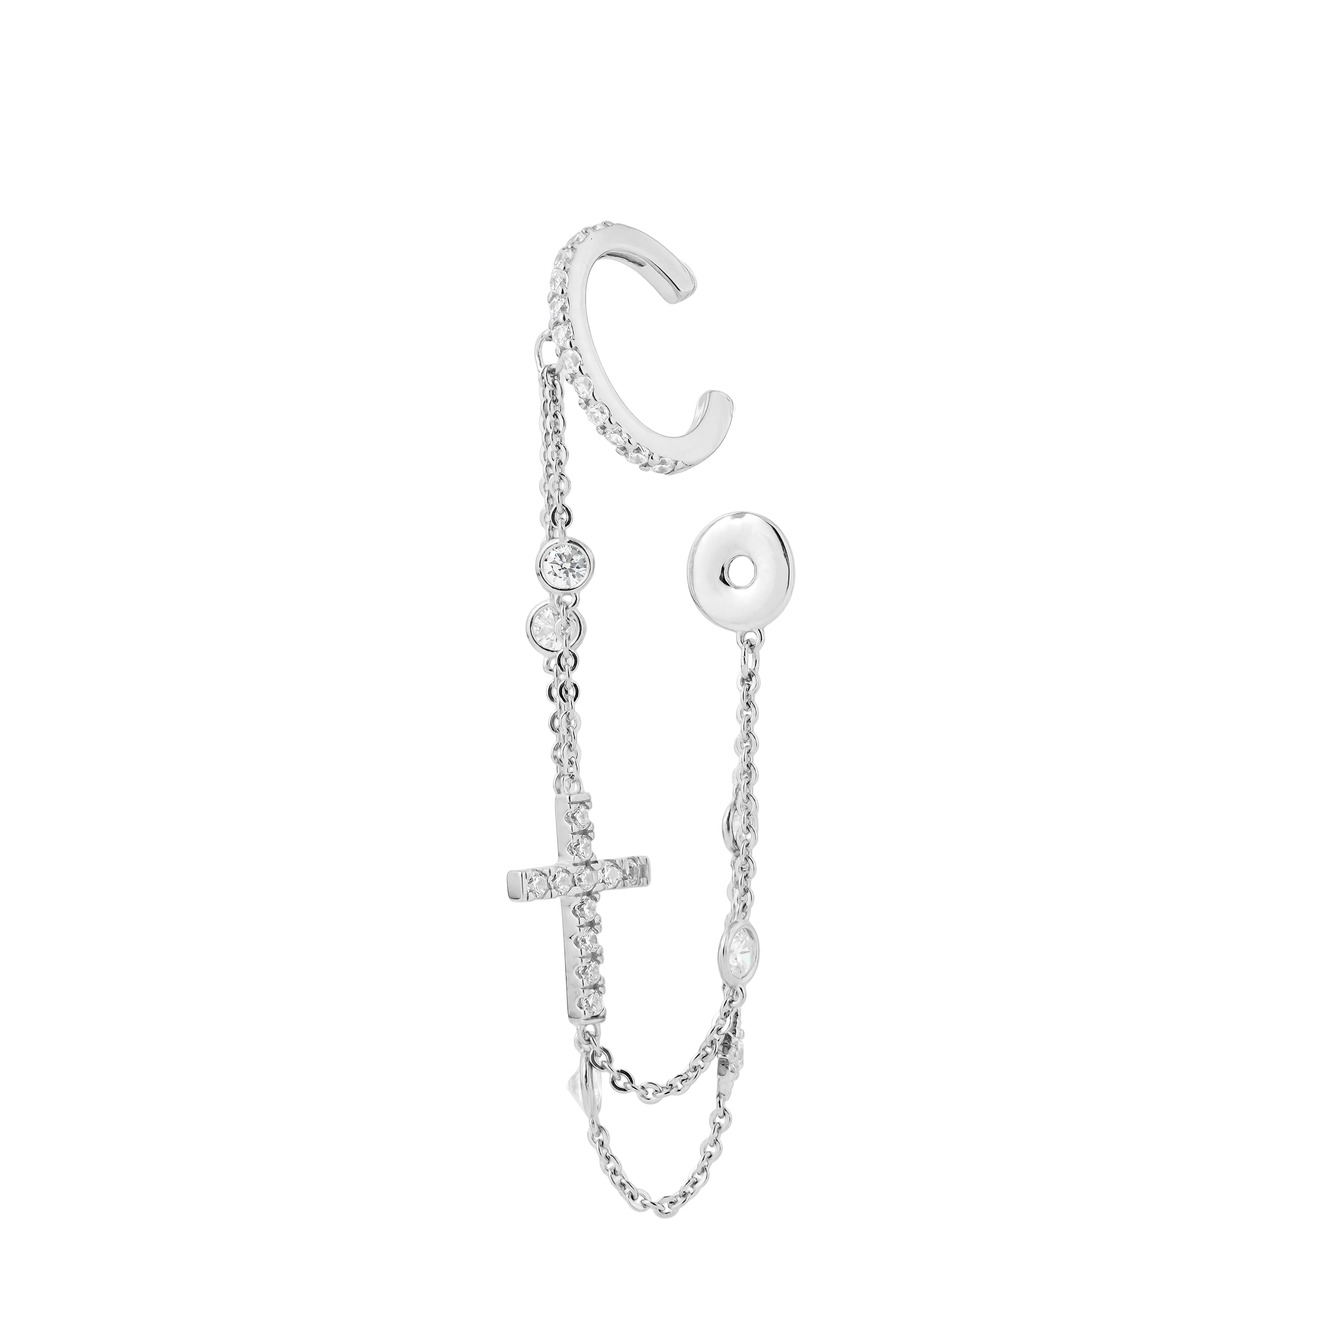 SKYE Серебряный кафф с цепочками в два ряда, кастами, прямым крестом и монеткой skye серебряный кафф из двух маркизов